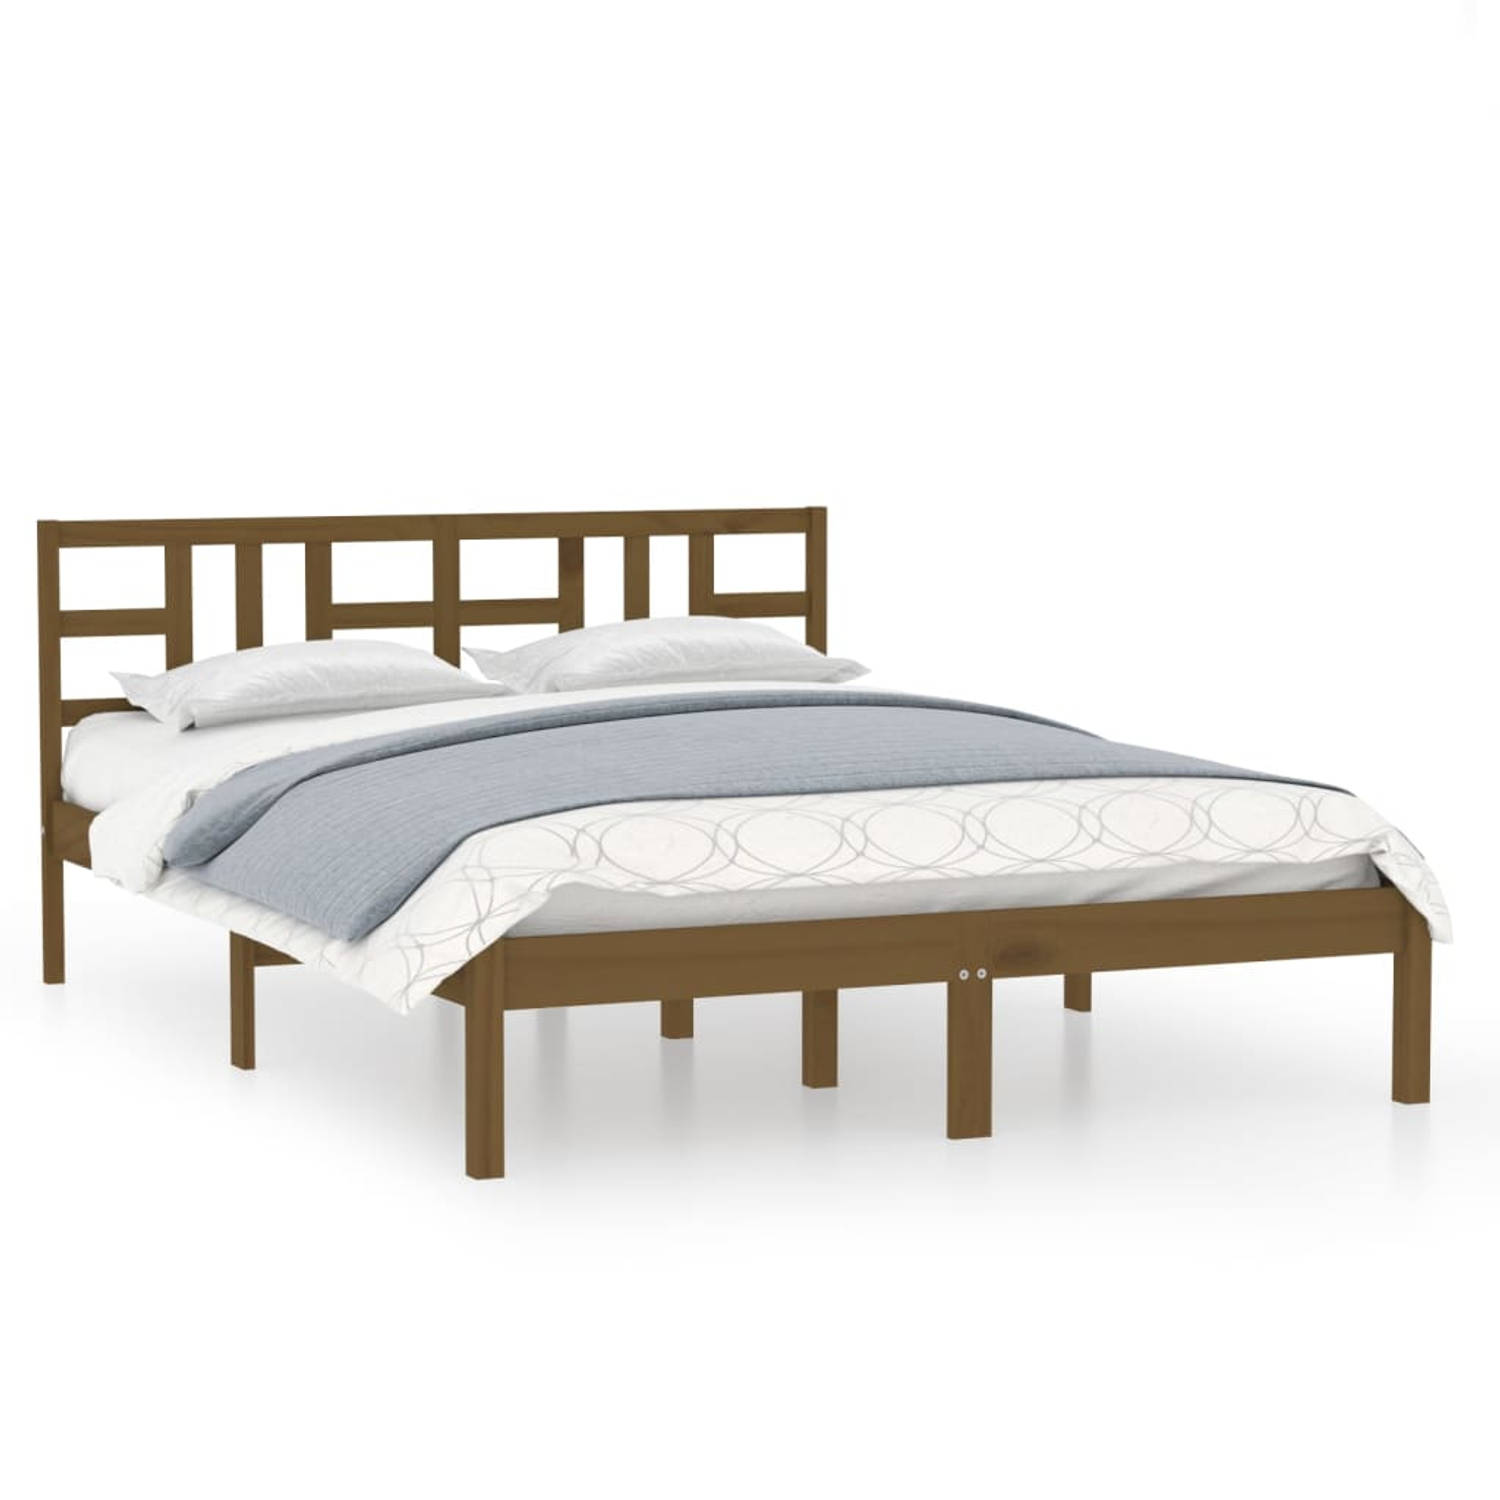 The Living Store Bedframe massief hout honingbruin 140x200 cm - Bedframe - Bedframes - Tweepersoonsbed - Bed - Bedombouw - Dubbel Bed - Frame - Bed Frame - Ledikant - Houten Bedfra